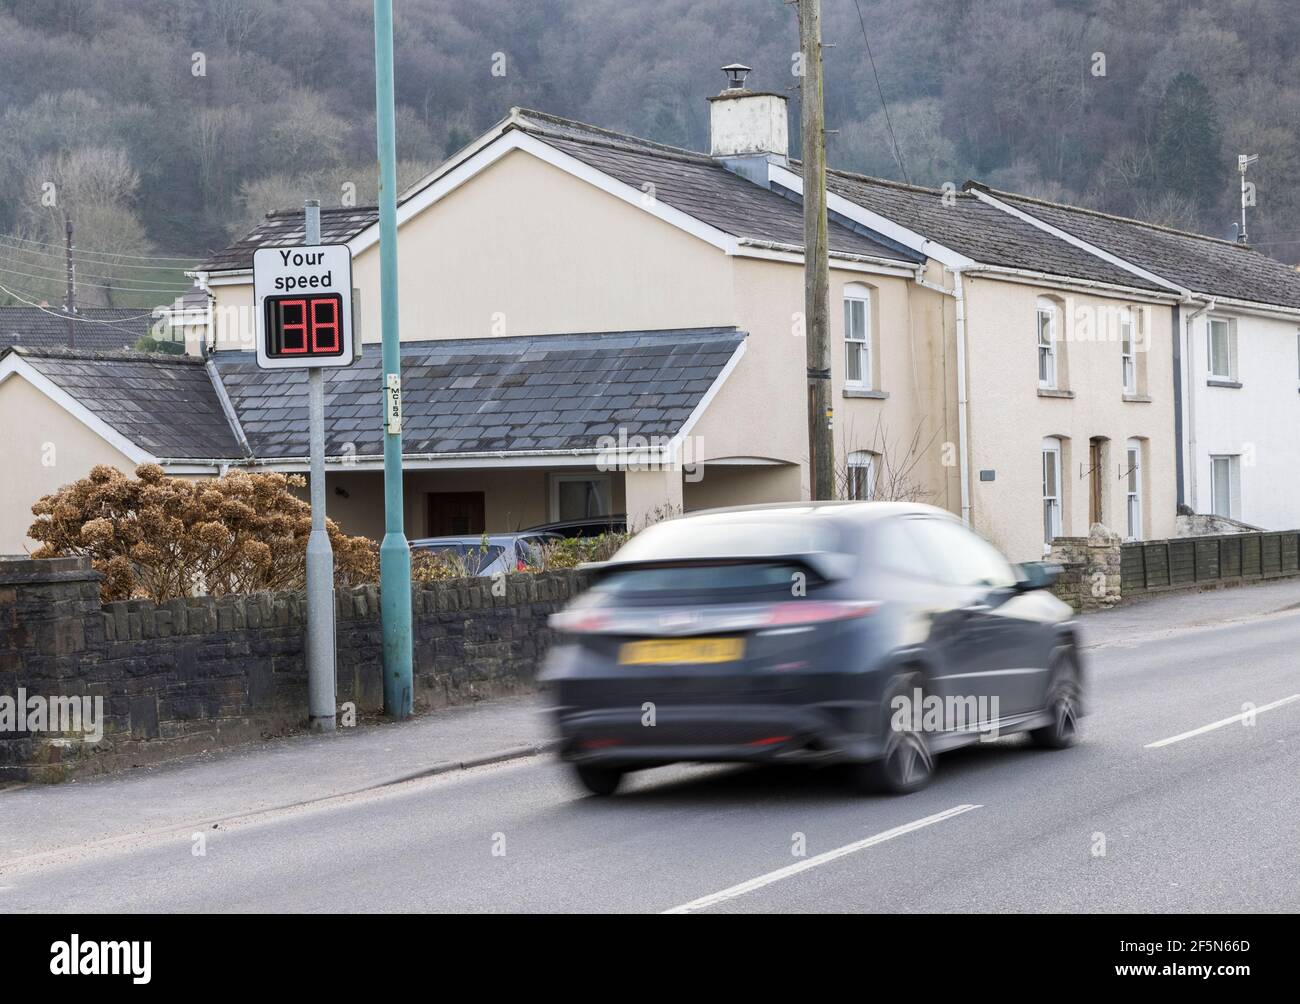 Auto, das durch Dorf auf Ihrem Geschwindigkeit digitalen Zeichen in 30mph Limit gefangen, Llanfoist, Wales, Großbritannien Stockfoto